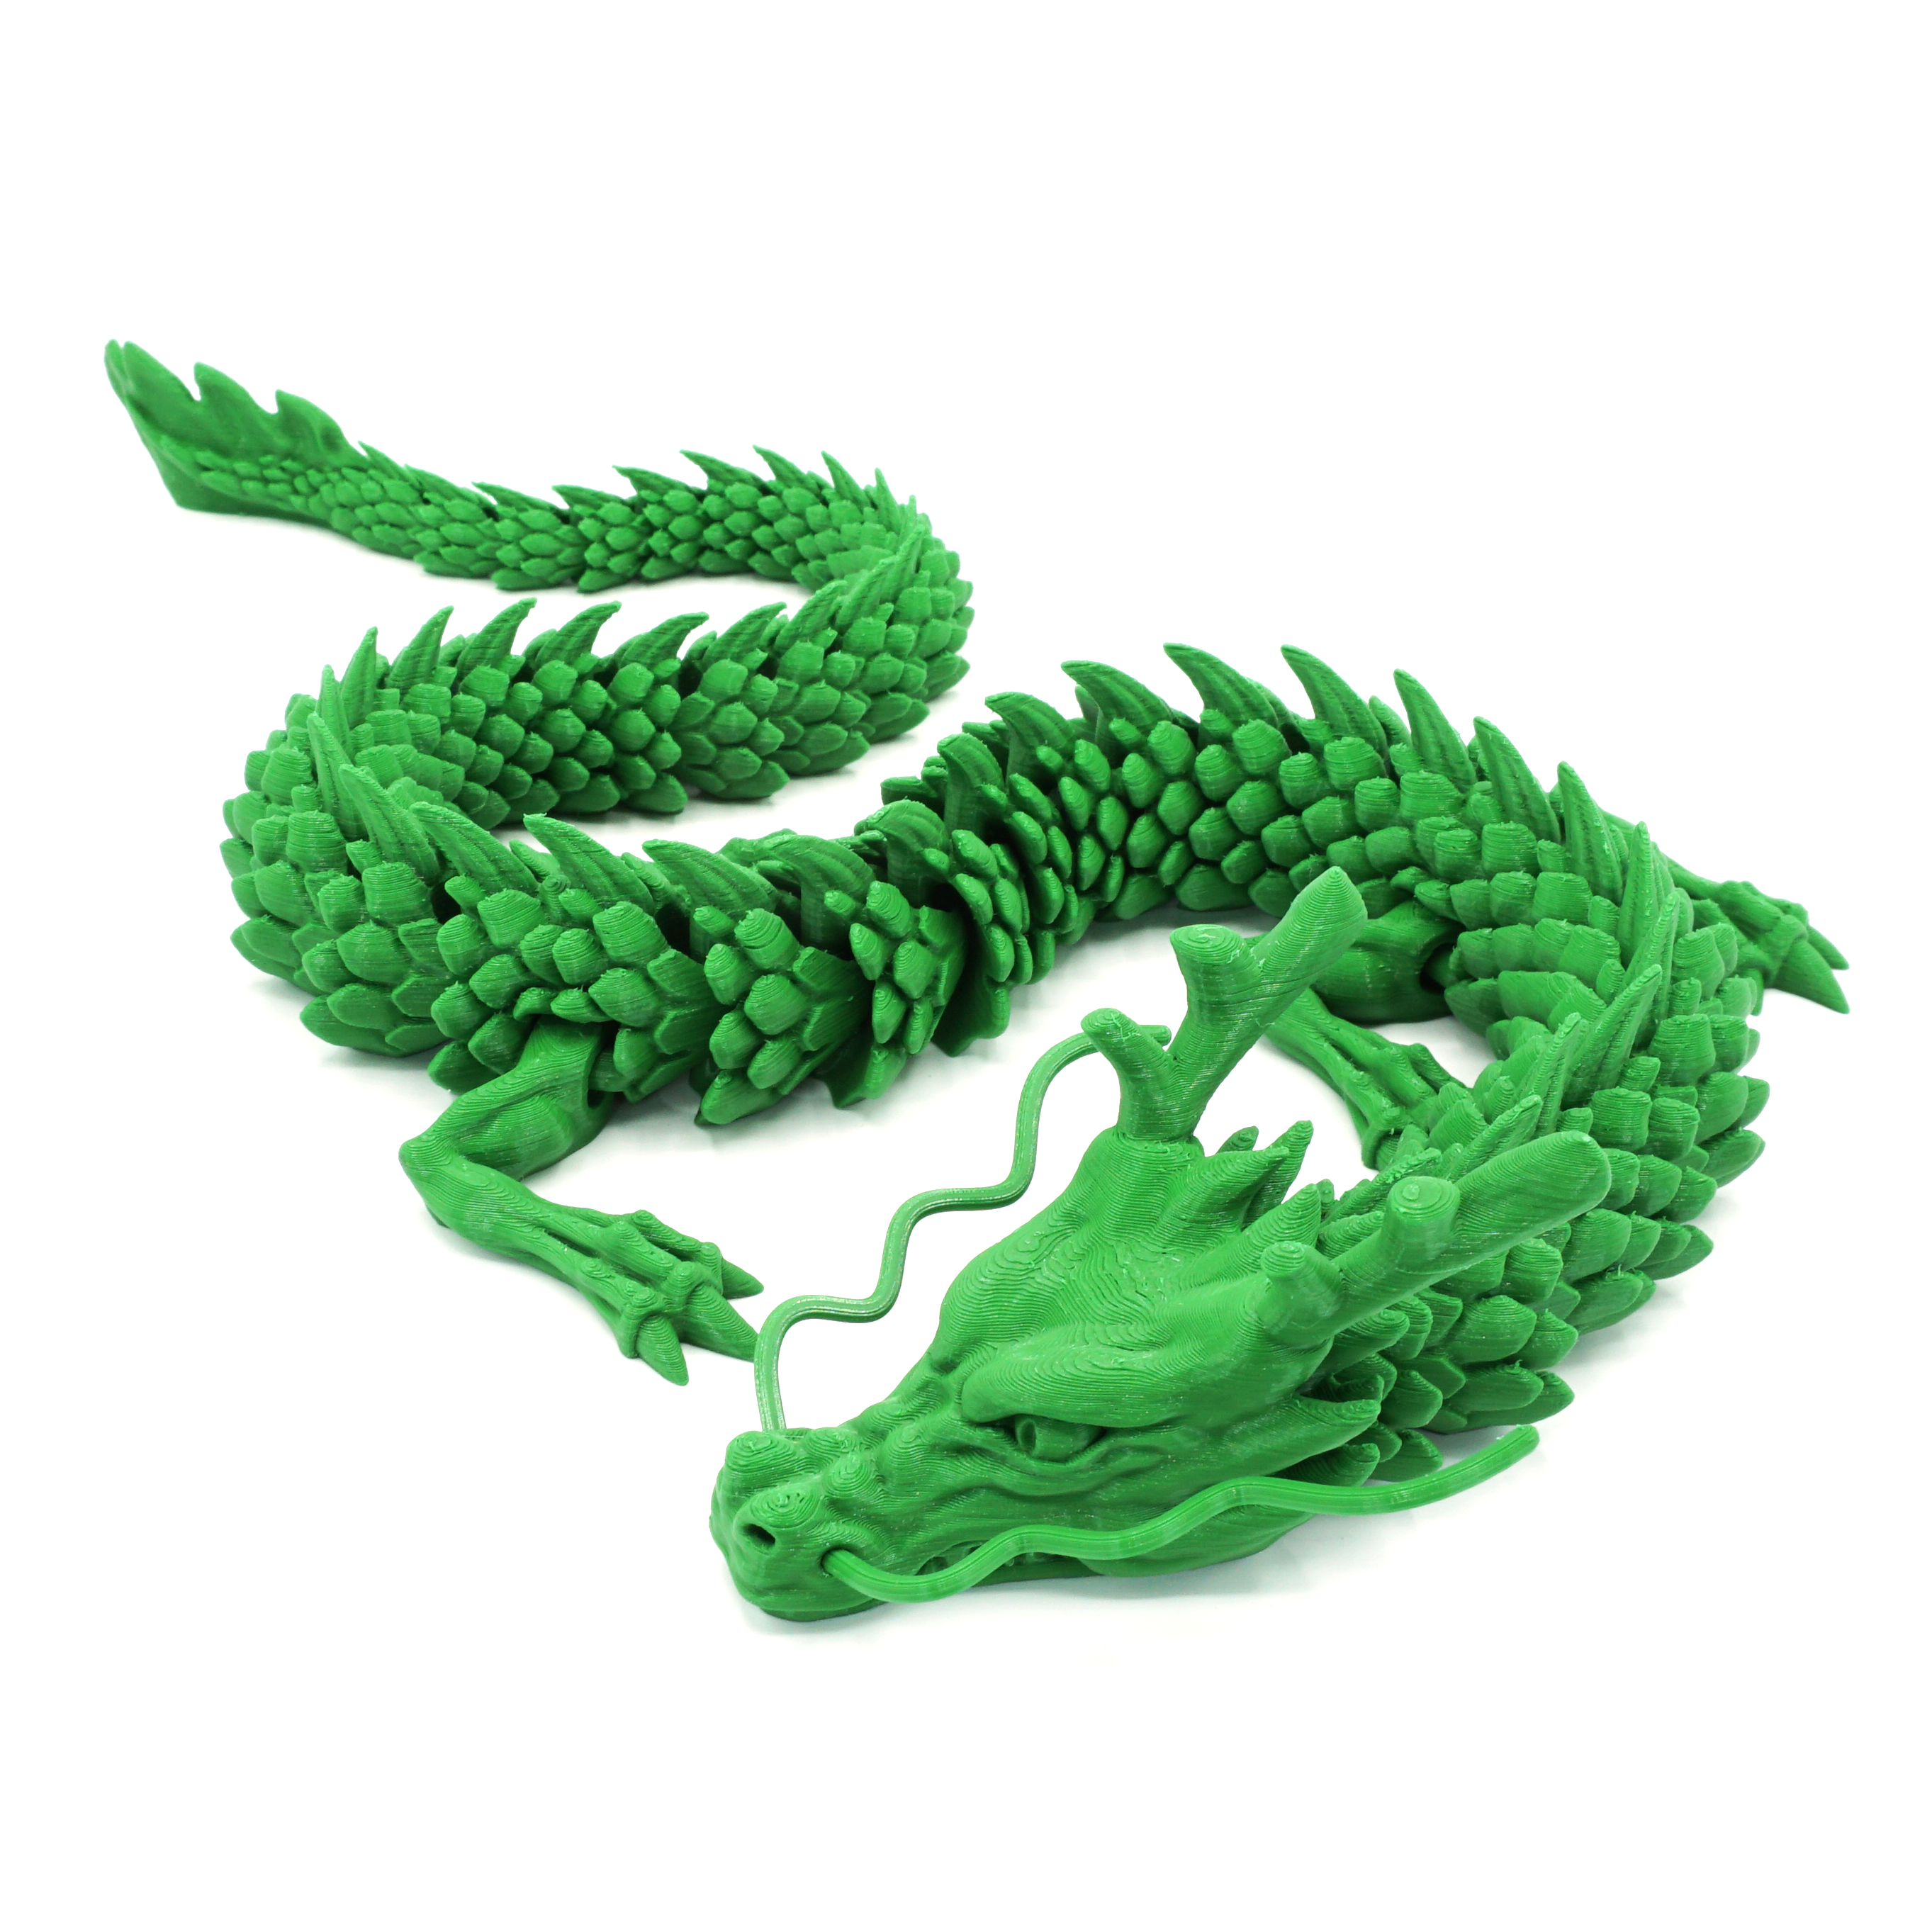 3d printed dragon file